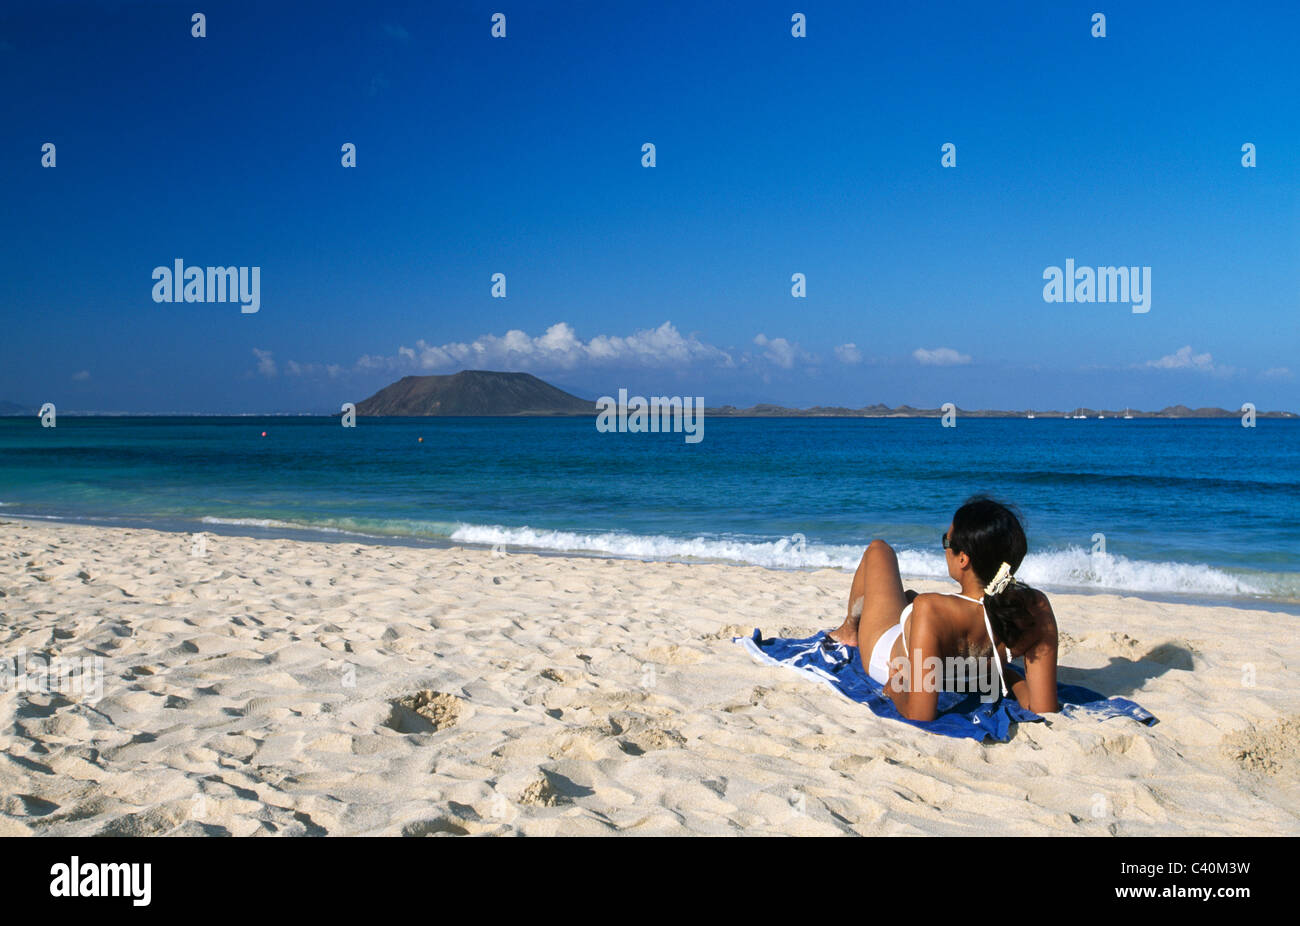 Modell veröffentlicht, Strand, Meer, Corralejo, Fuerteventura, Kanarische Inseln, Inseln, Spanien, Frau, Sand Stockfoto